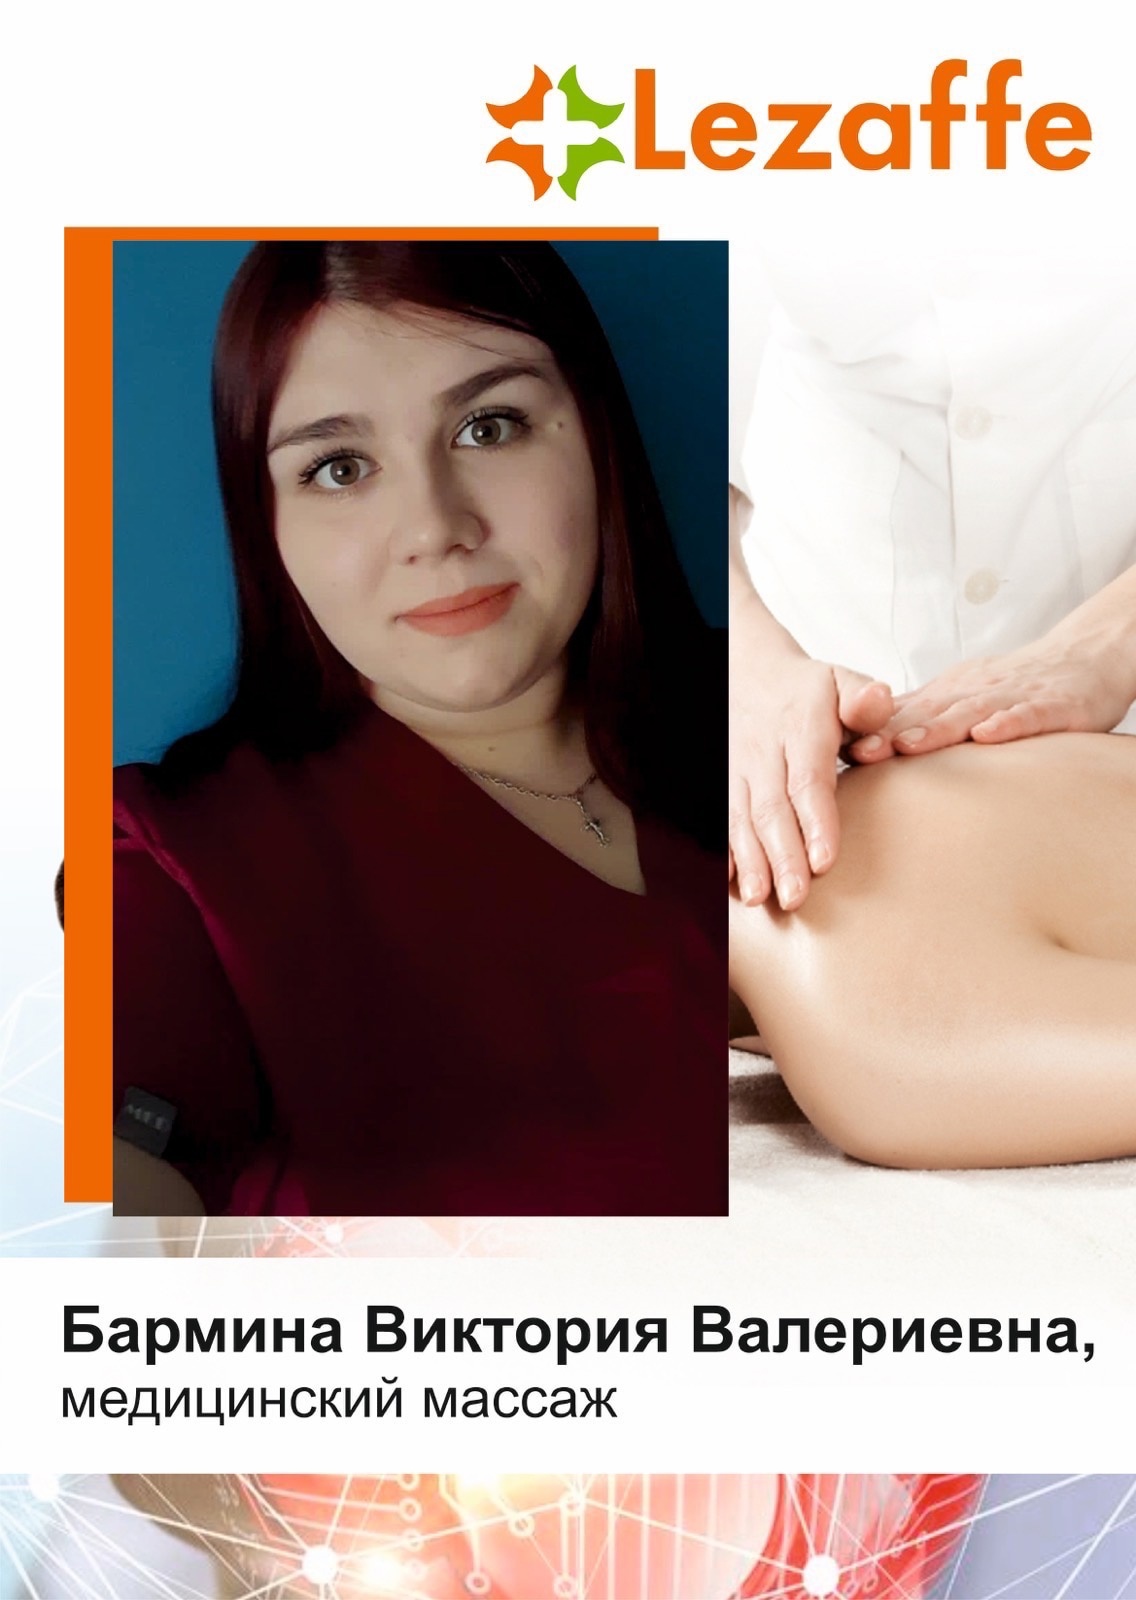 Бармина Виктория Валериевна - медицинский массаж в клинике Lezaffe г. Нягань